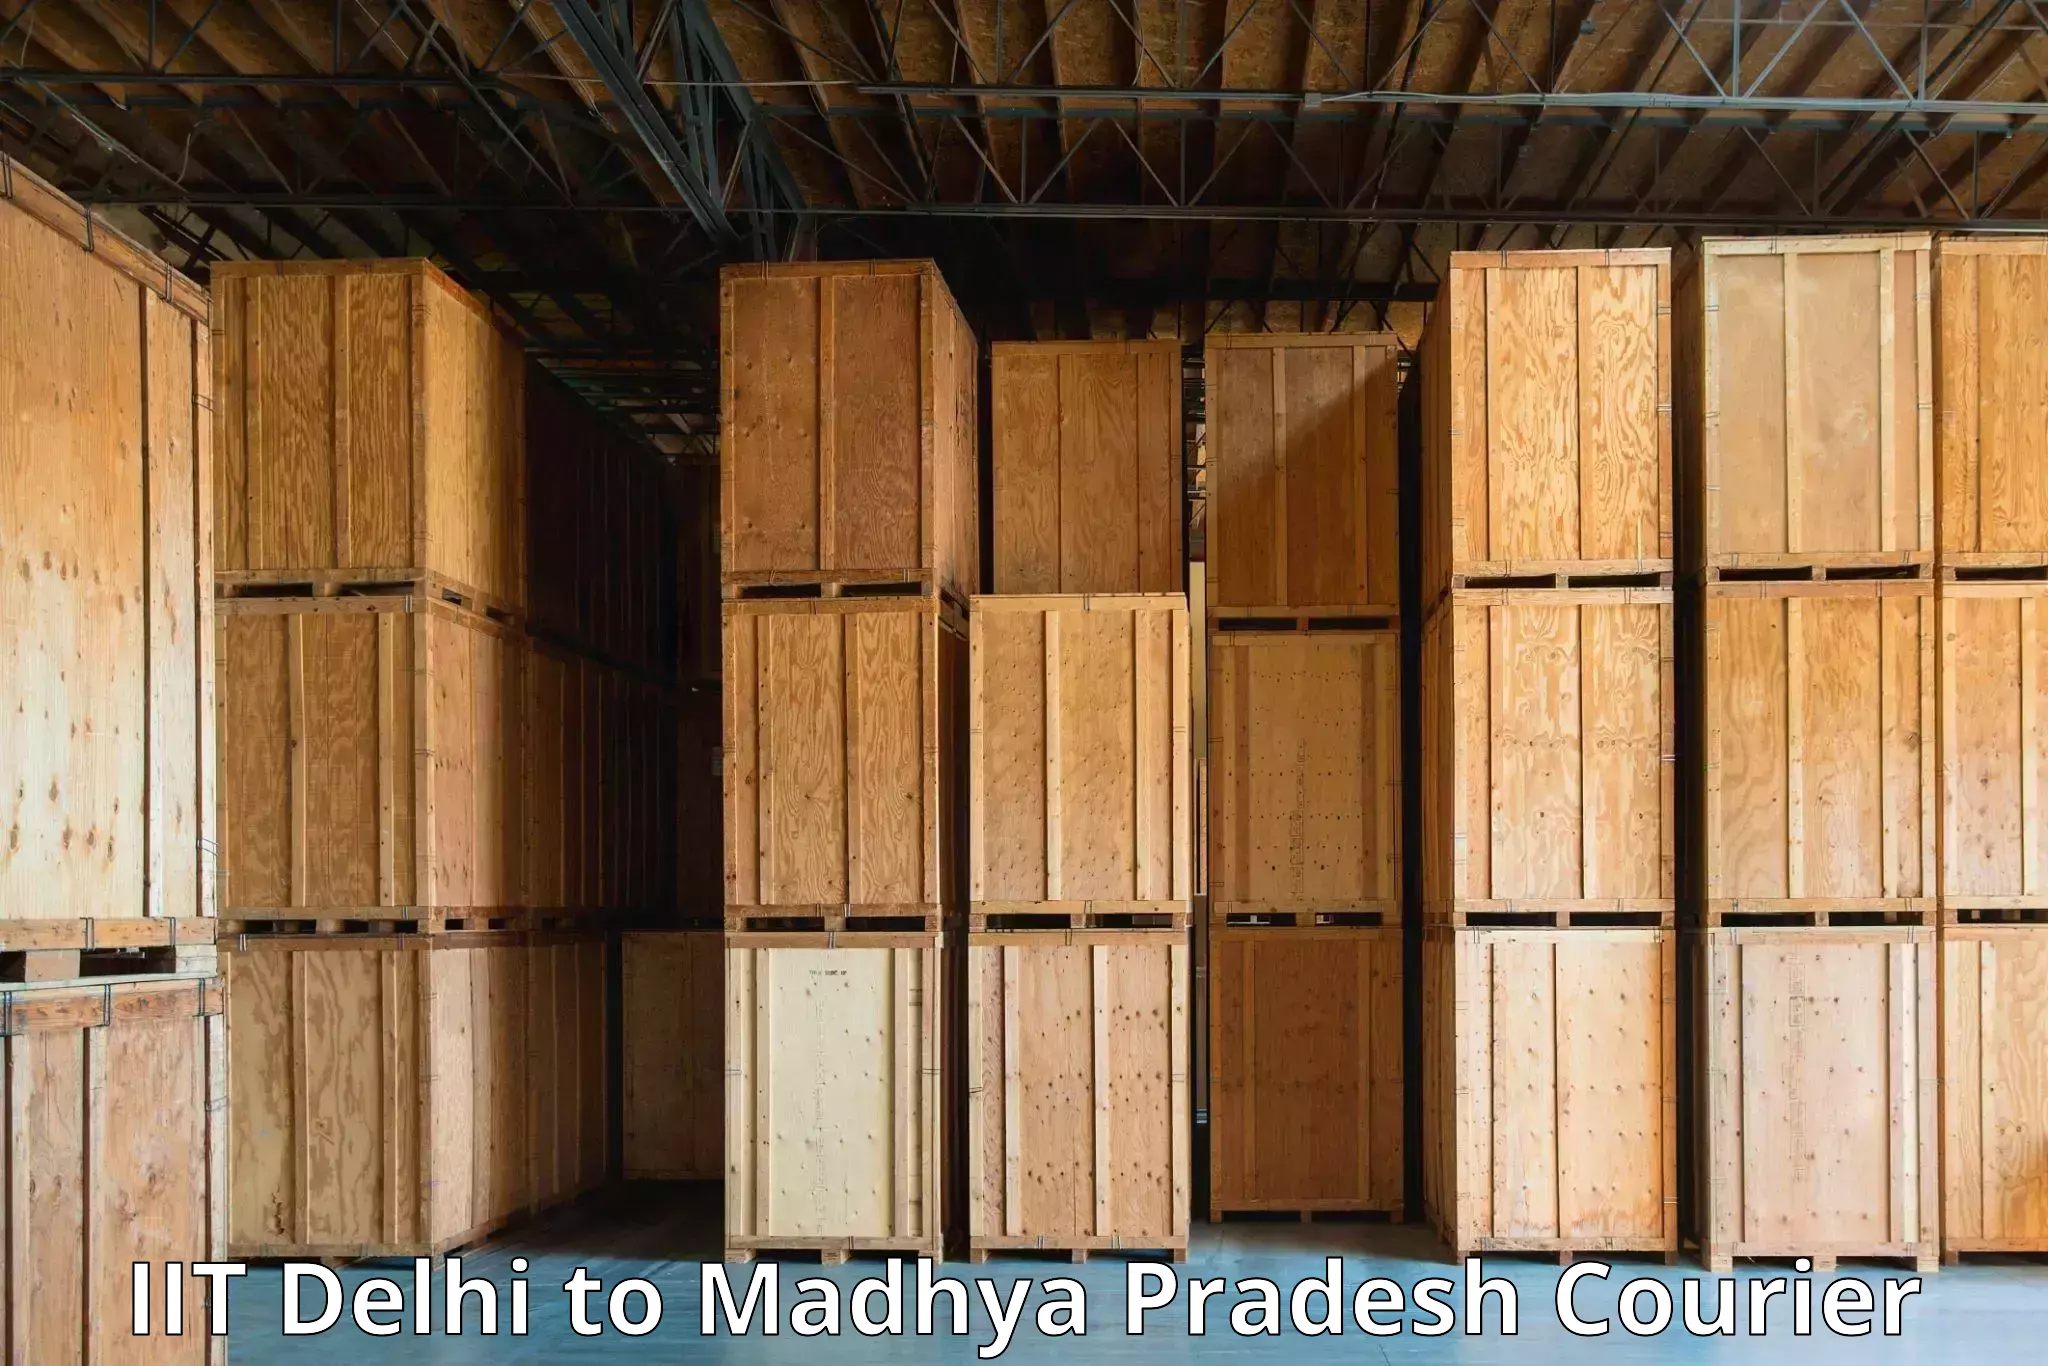 Efficient parcel tracking IIT Delhi to Khajuraho